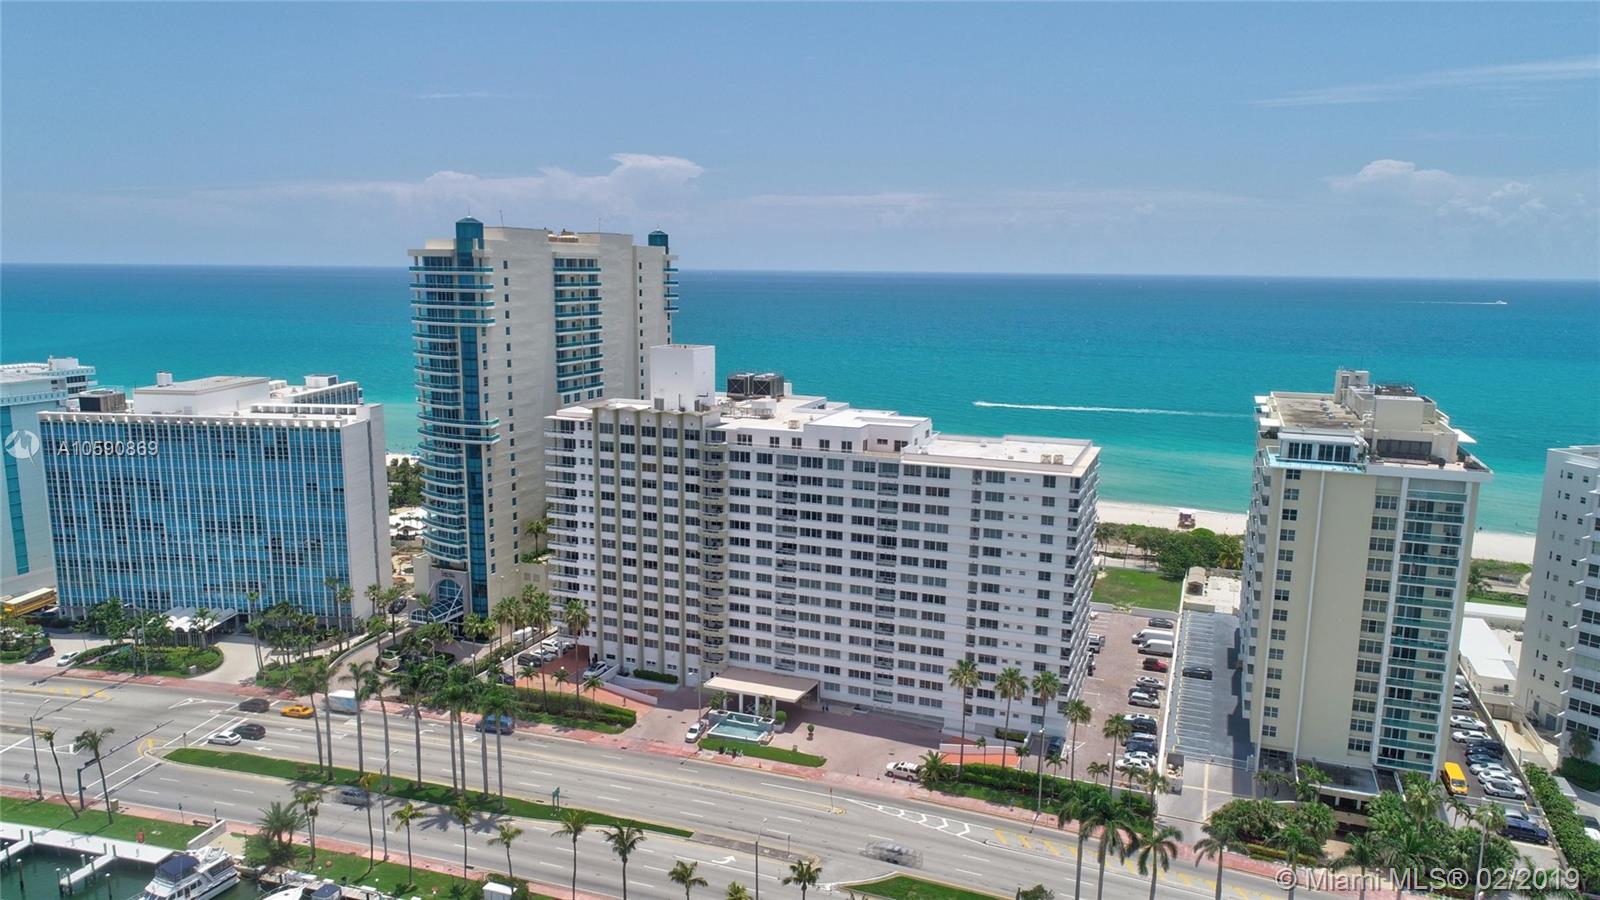 Carriage Club North Unit #1402 Condo for Rent in Mid-Beach - Miami